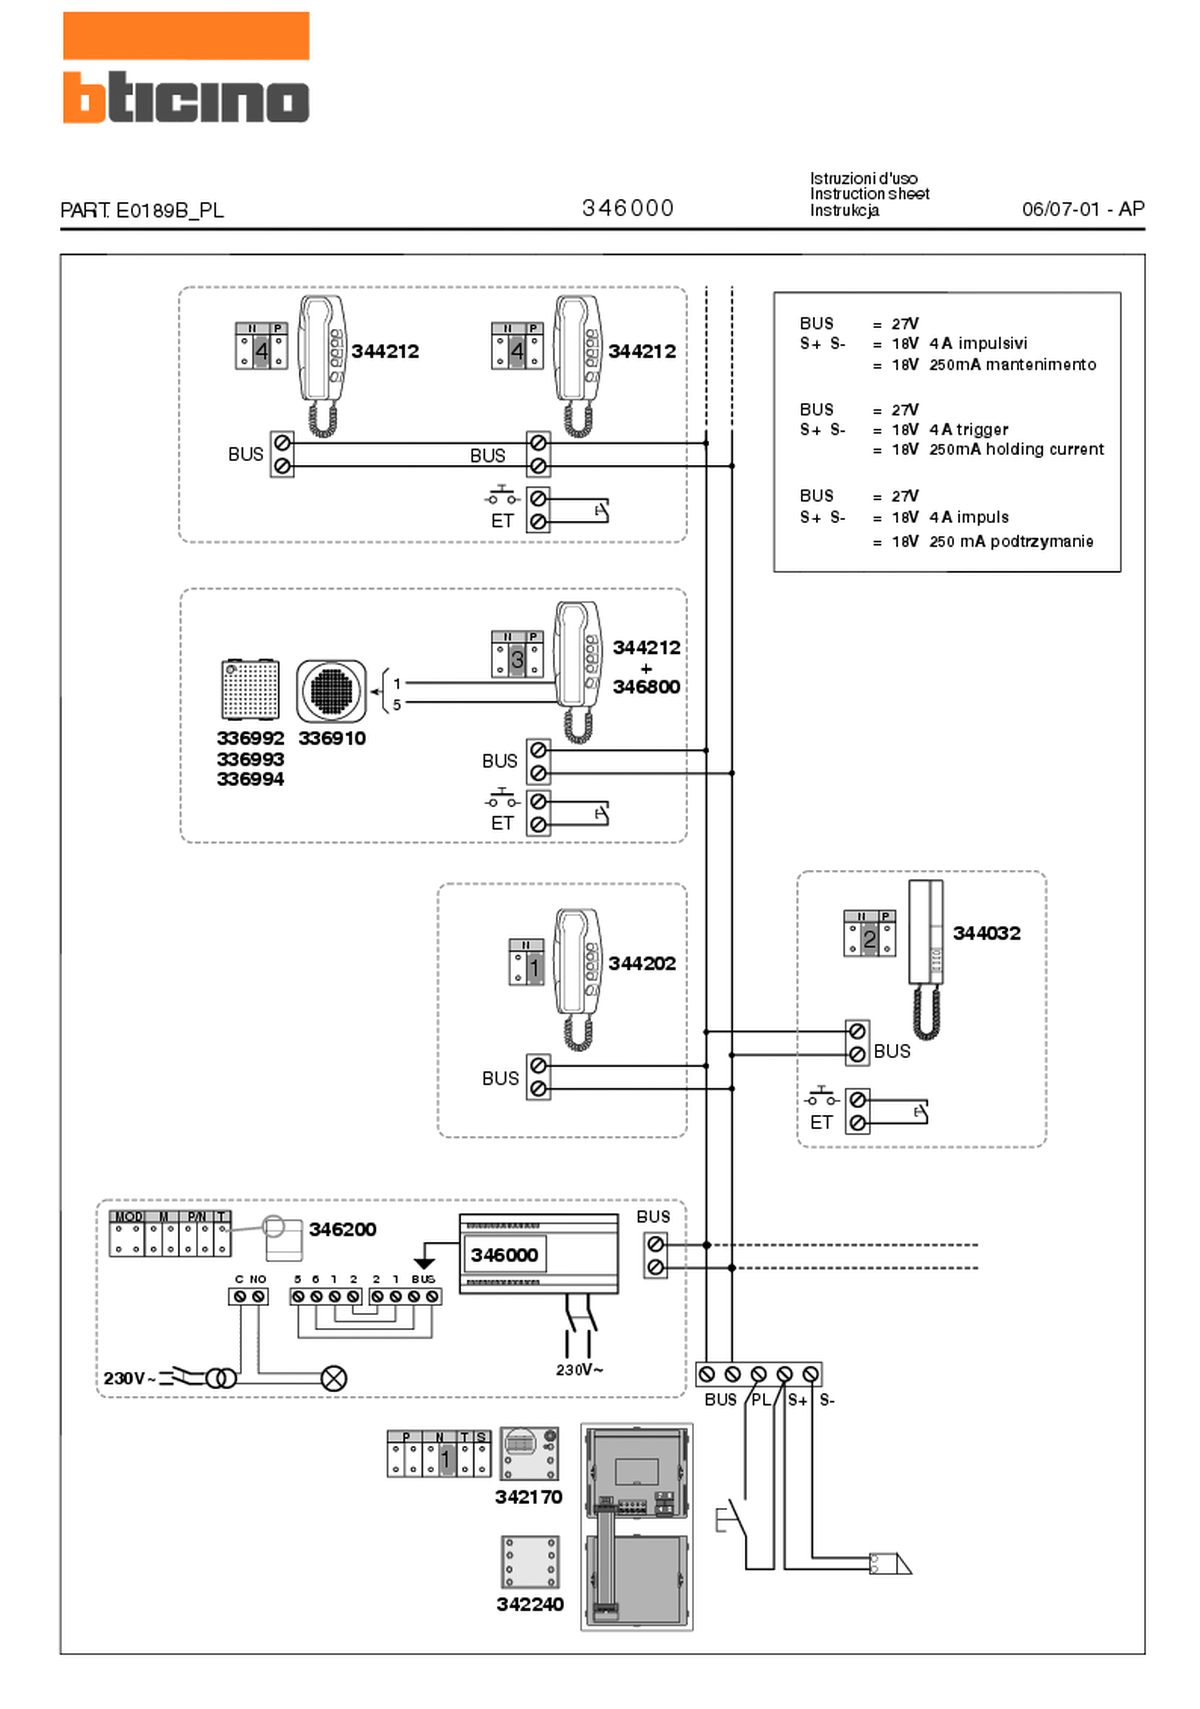 Fabrieksschema E-63 instruction sheet